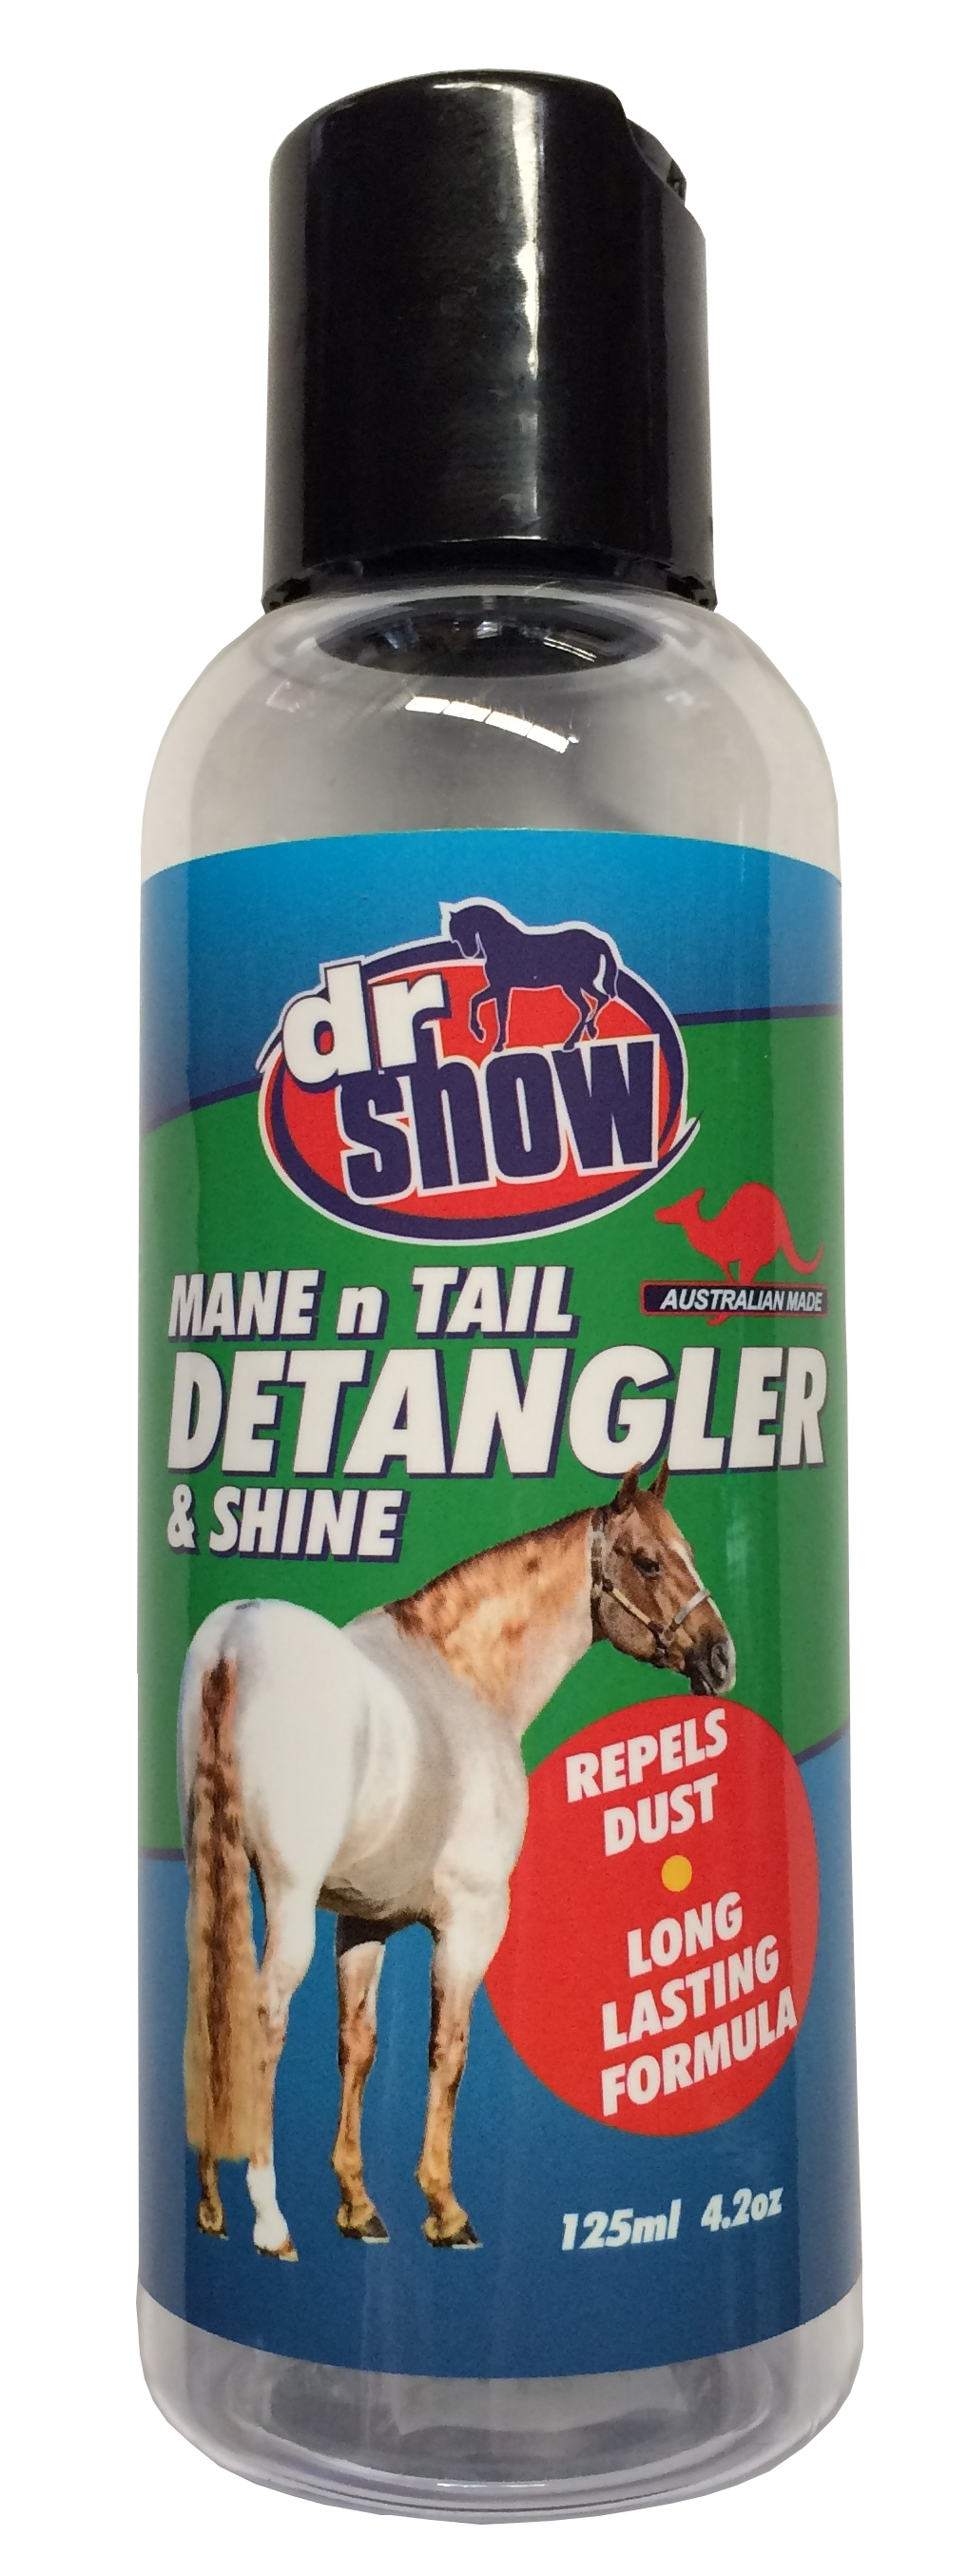 Dr Show Mane and Tail Detangler 125ml